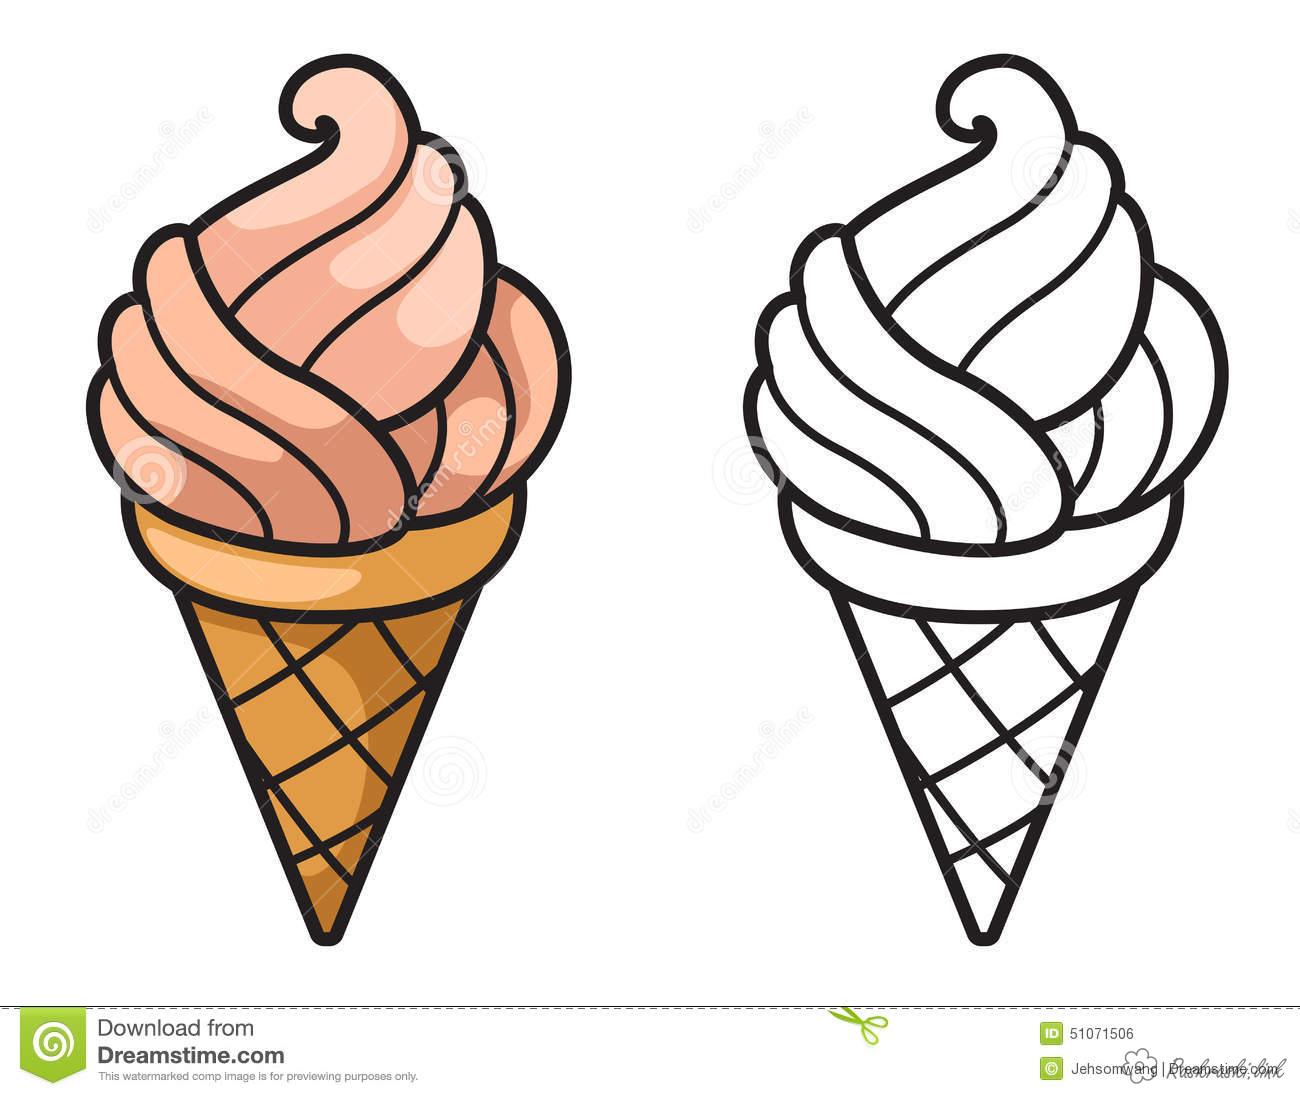 Раскраски Мороженое Раскраски, игра для детей, клубничное, мороженое, вафельный стаканчик